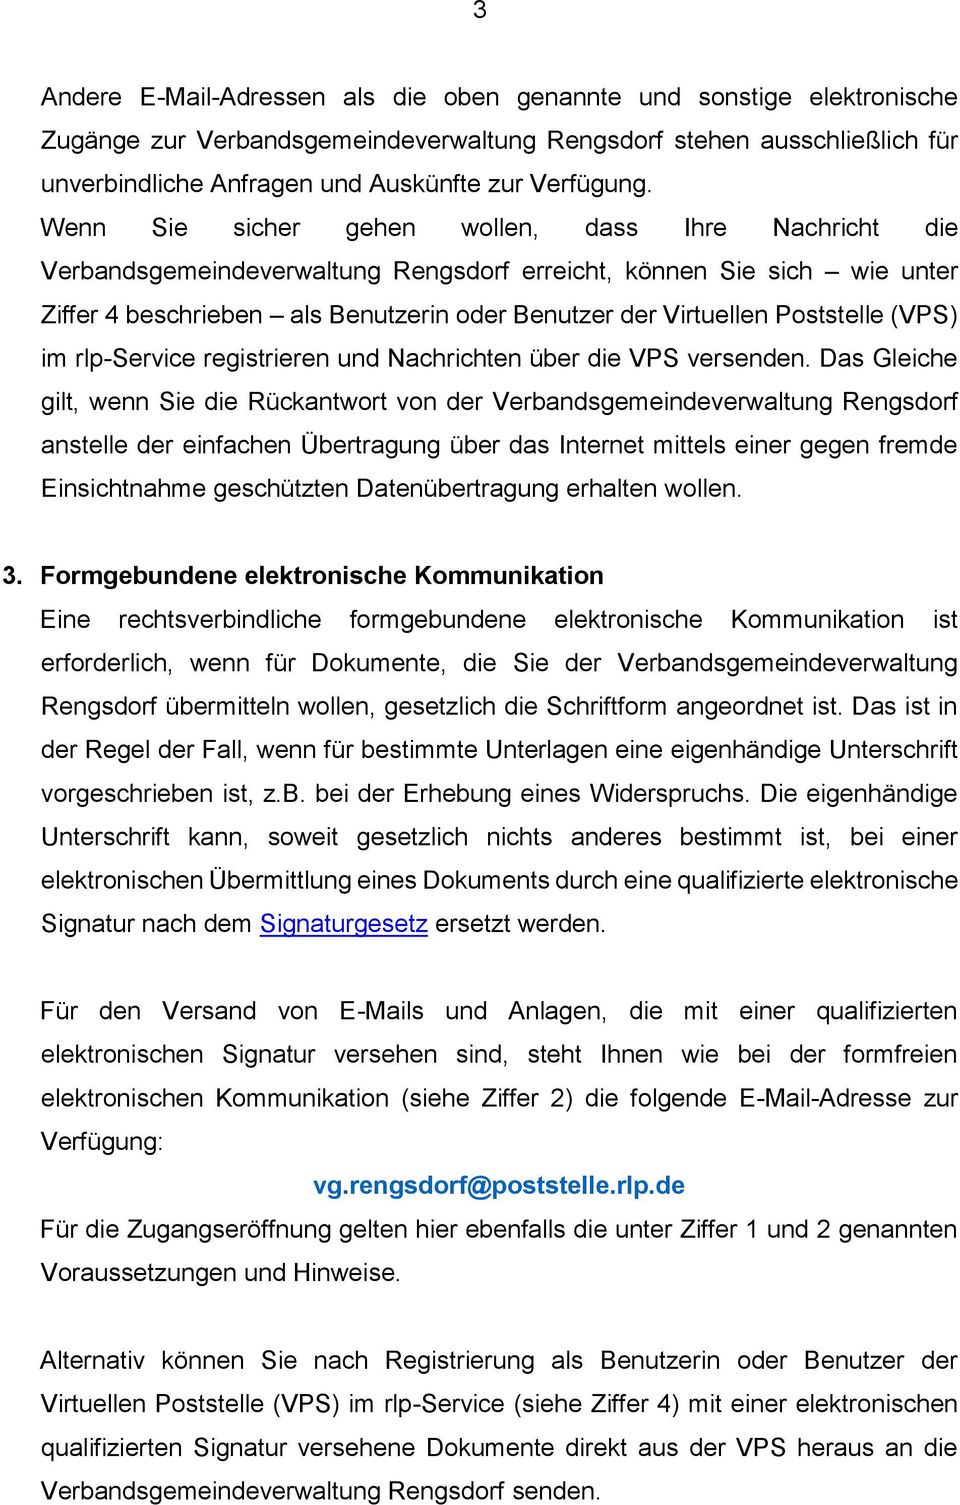 Wenn Sie sicher gehen wollen, dass Ihre Nachricht die Verbandsgemeindeverwaltung Rengsdorf erreicht, können Sie sich wie unter Ziffer 4 beschrieben als Benutzerin oder Benutzer der Virtuellen